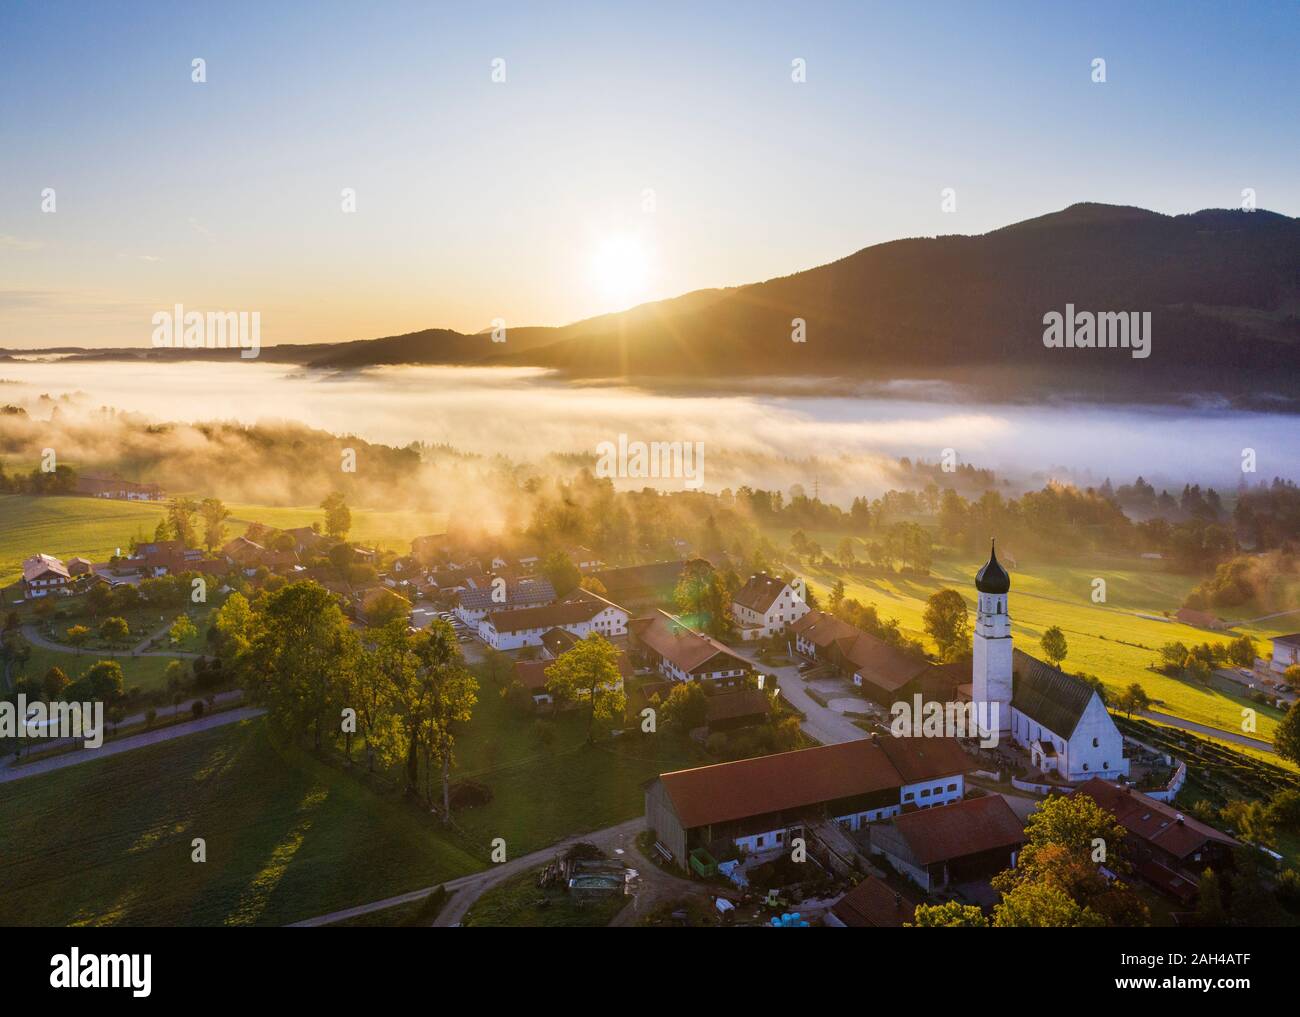 Alemania, Baviera, Gaissach superior, vista aérea de Isartal al amanecer. Foto de stock